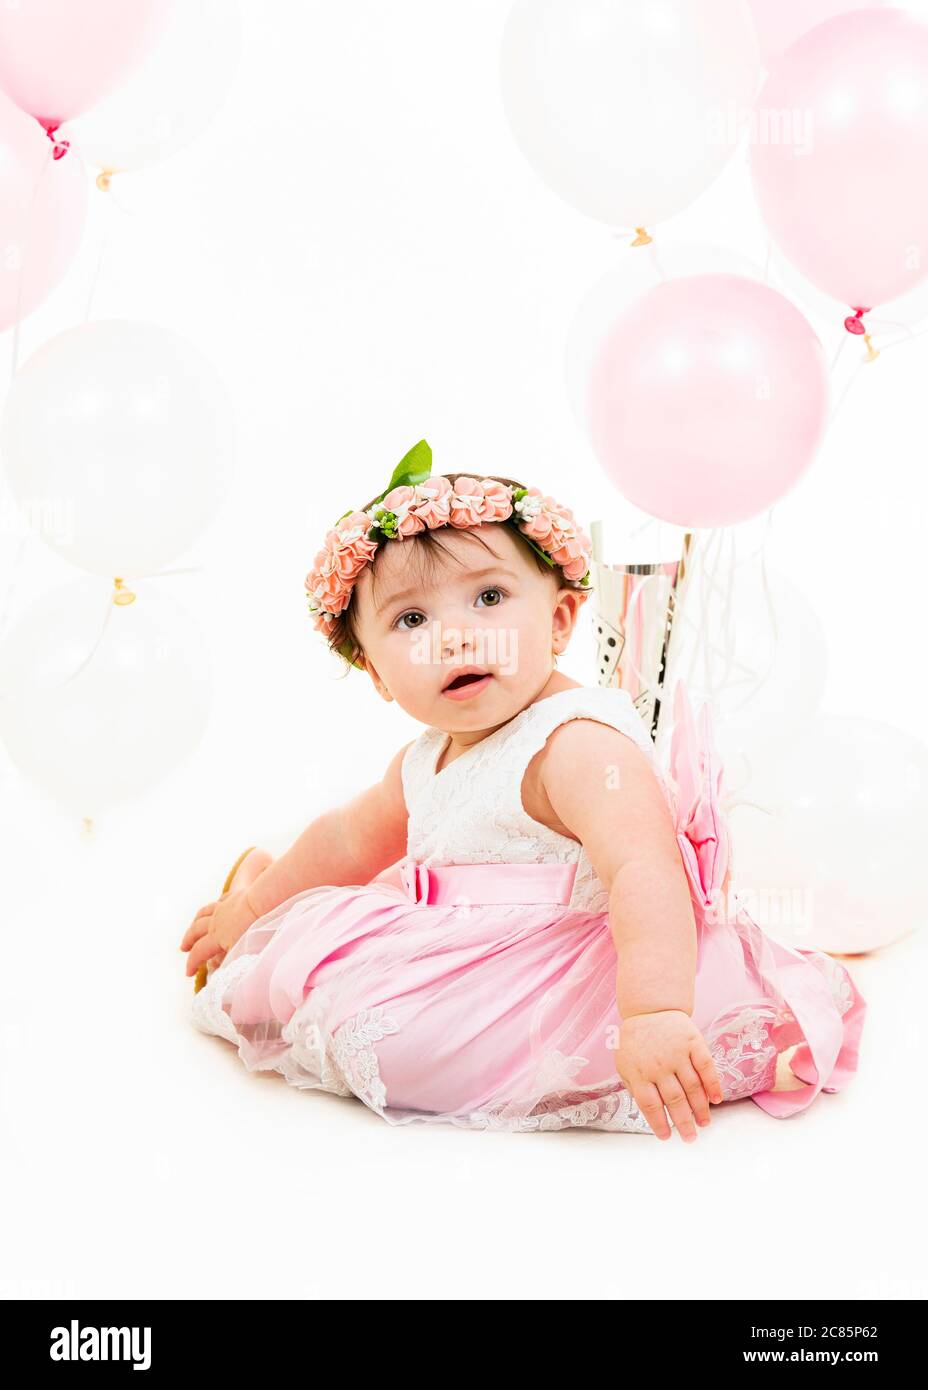 Retrato vertical del estilo de vida de una niña en su primer cumpleaños. Foto de stock